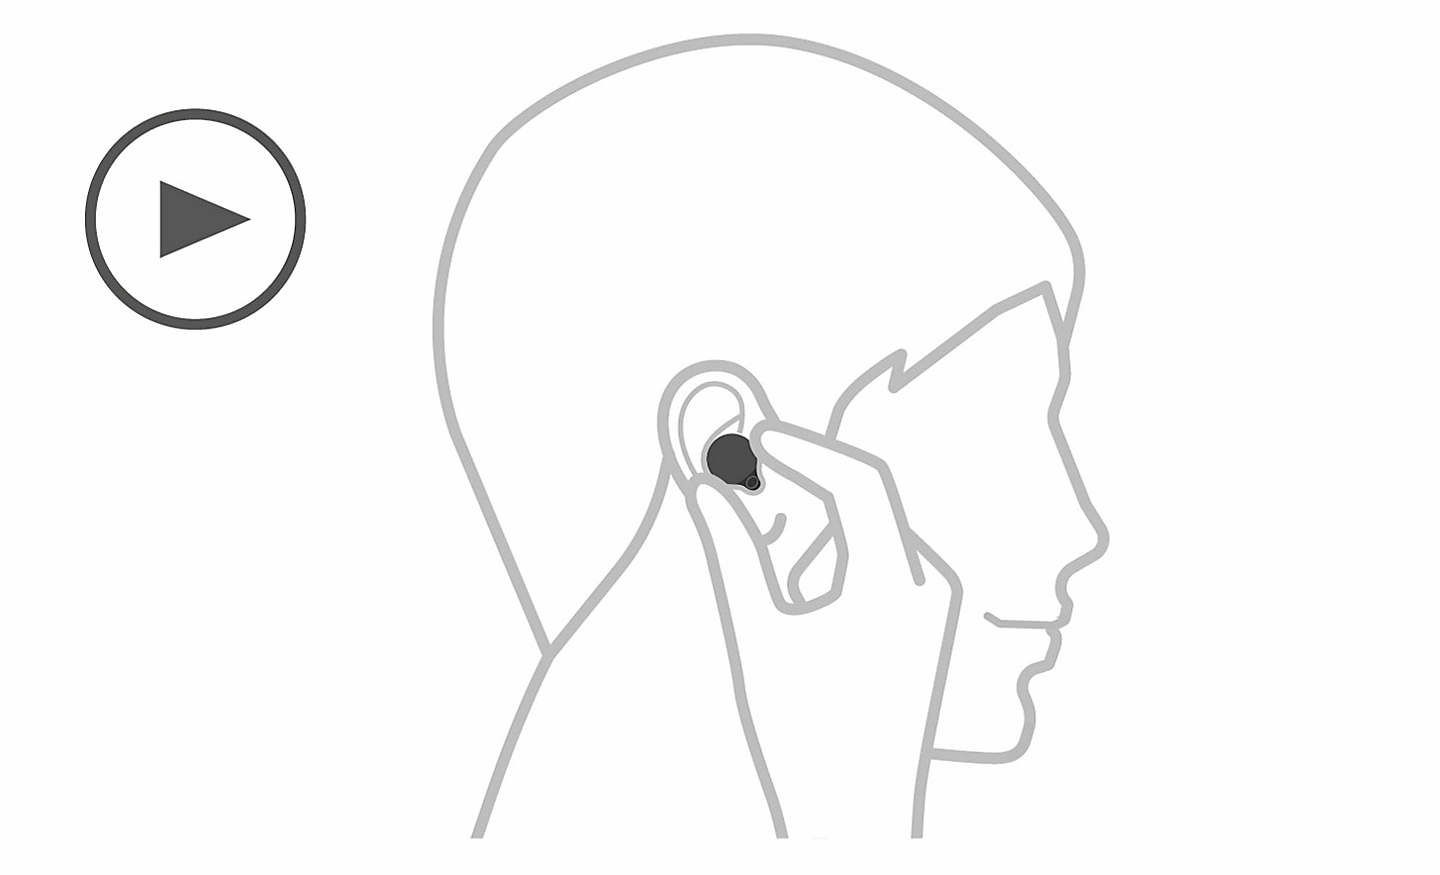 Egy fej ábrája, tőle balra Lejátszás ikon látható, valamint egy kéz, amely a fülhallgatót a fülbe helyezi